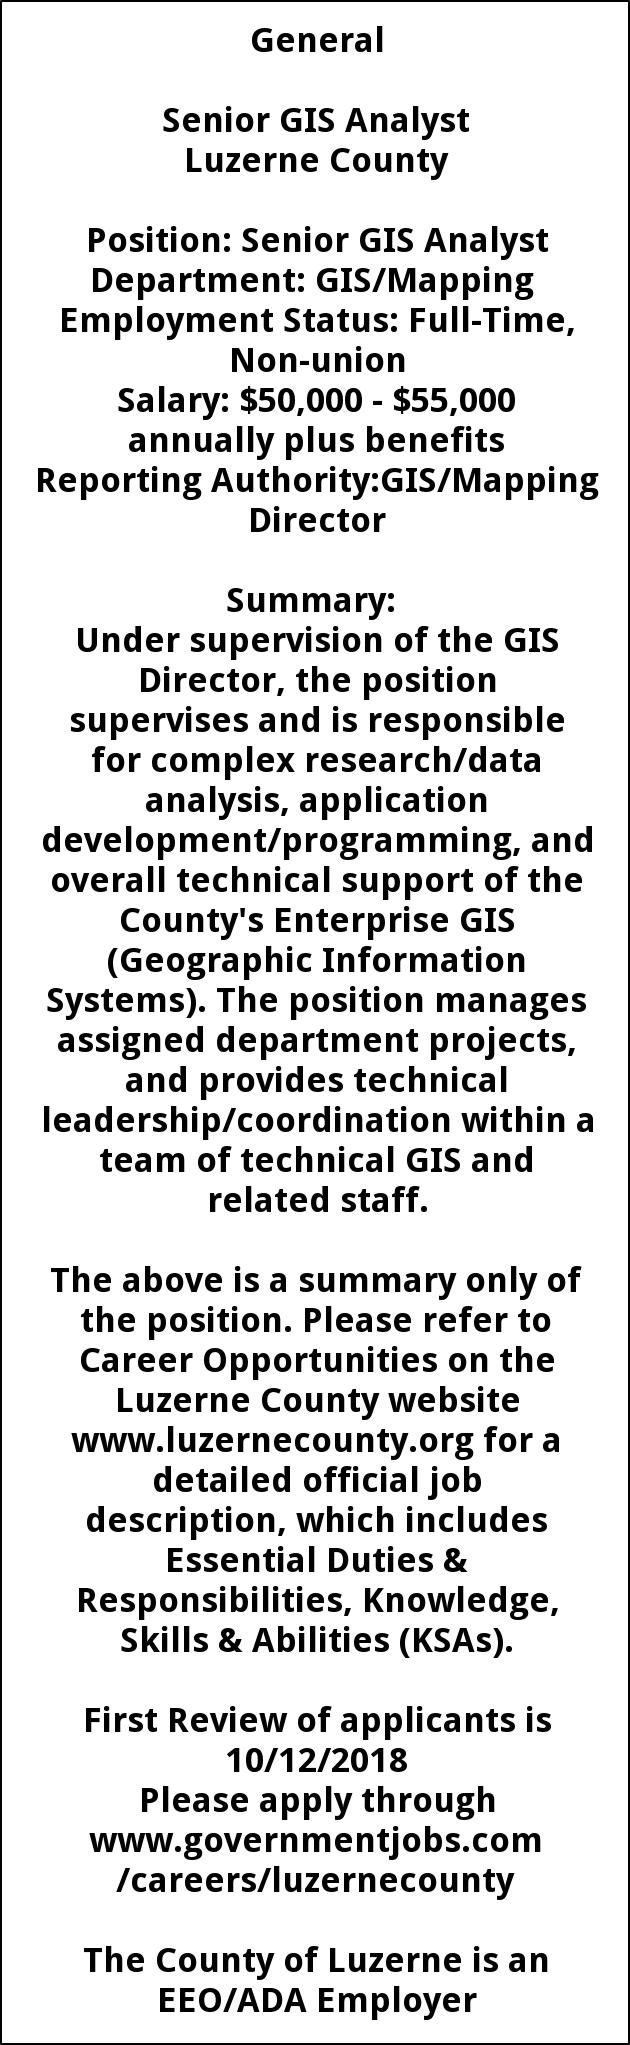 Sr GIS Analyst, Luzerne County